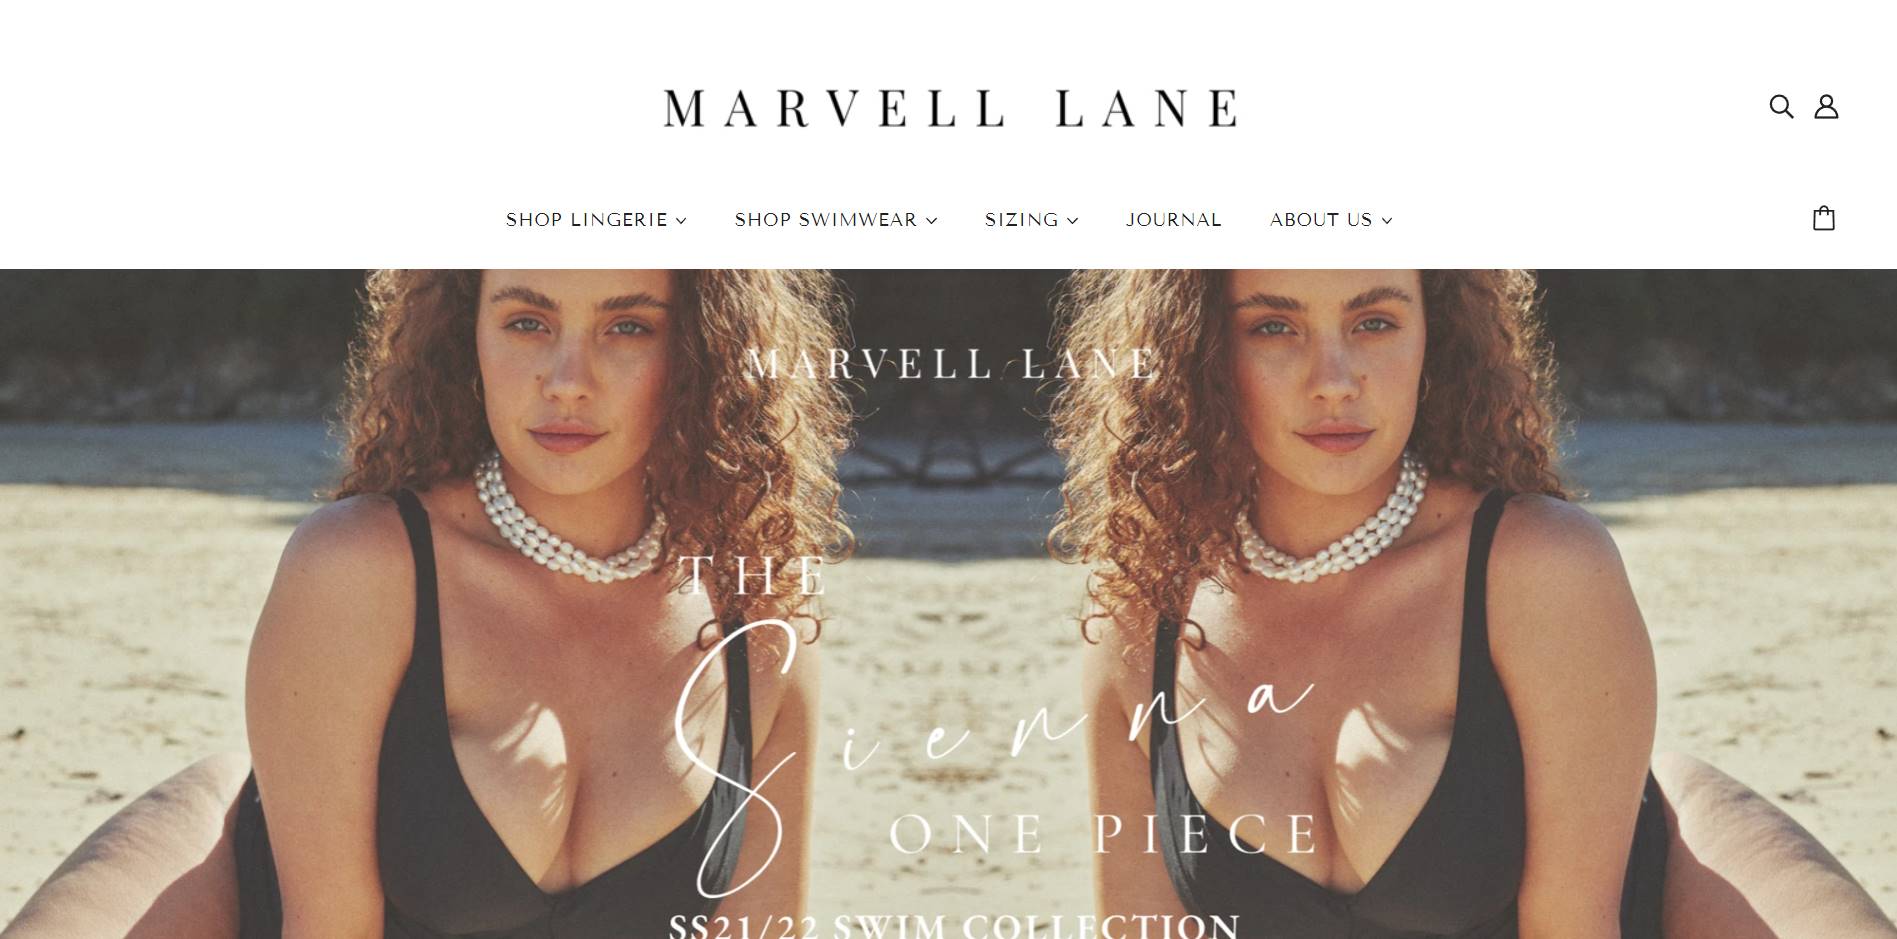 Marvell Lane